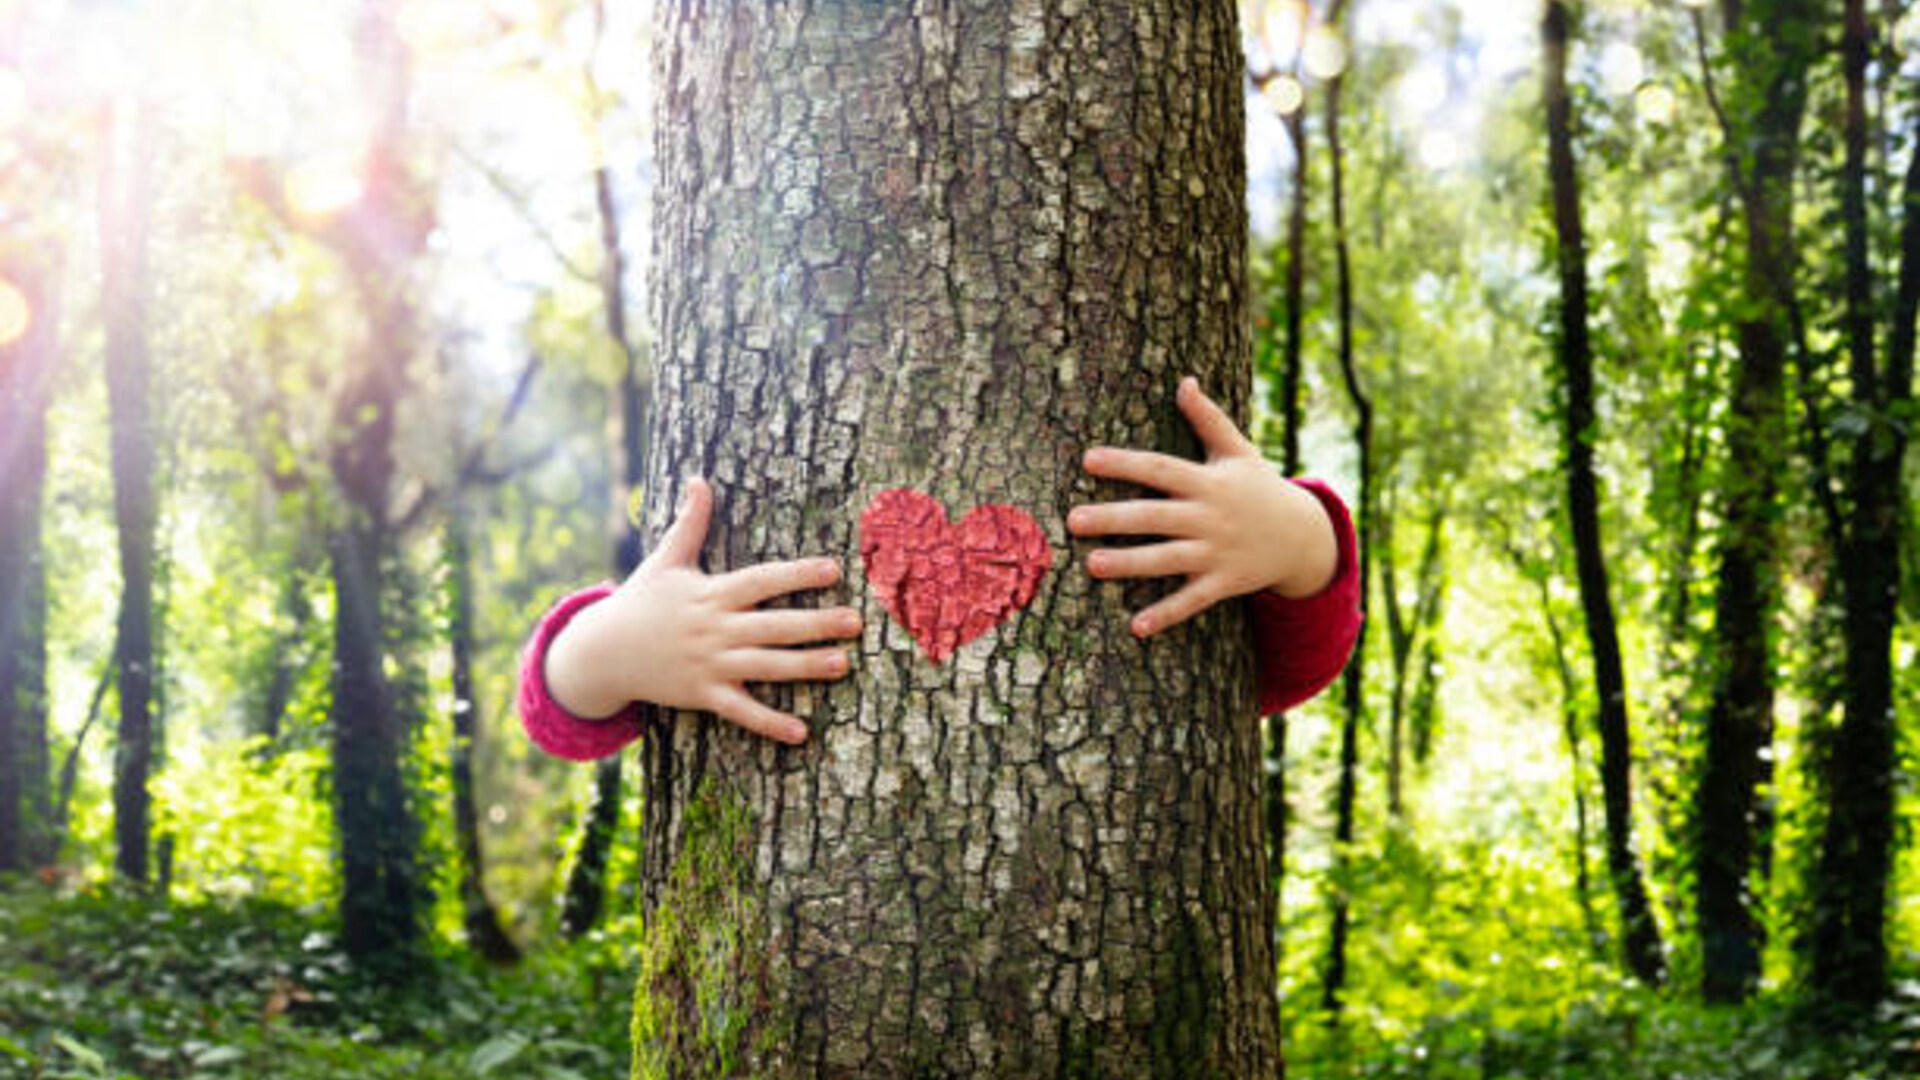 Een boom met op de bast een rood hart getekend. Twee handen houden de boom vast, alsof deze geknuffeld wordt.